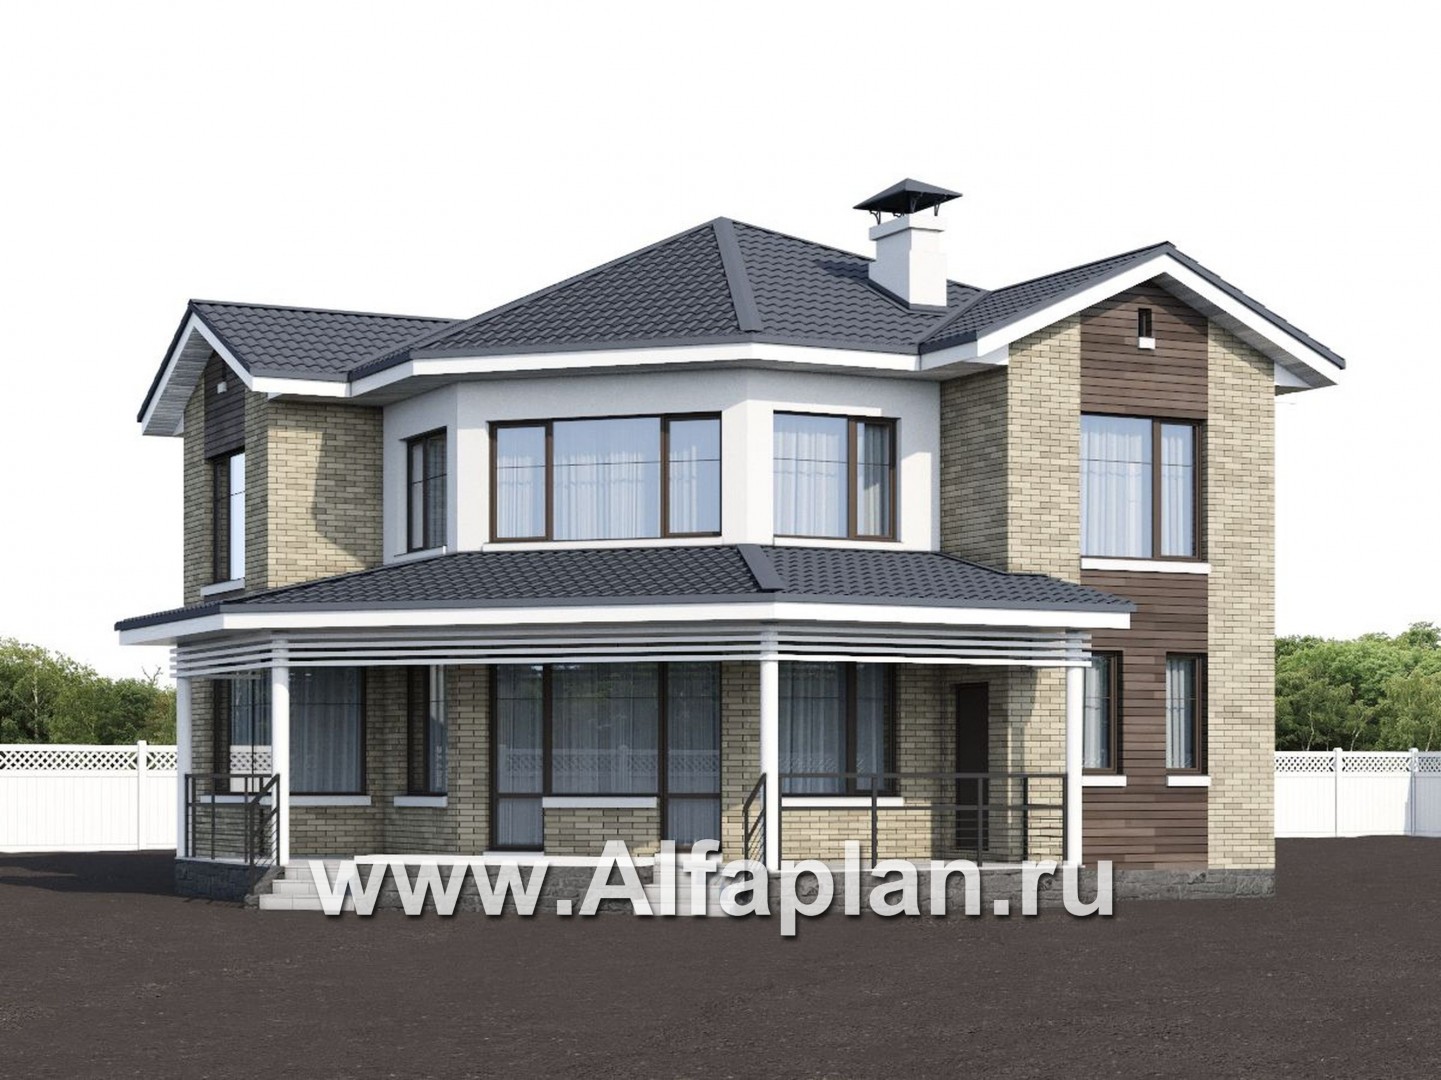 Проекты домов Альфаплан - NotaBene - компактный проект с оригинальным планом - дополнительное изображение №1